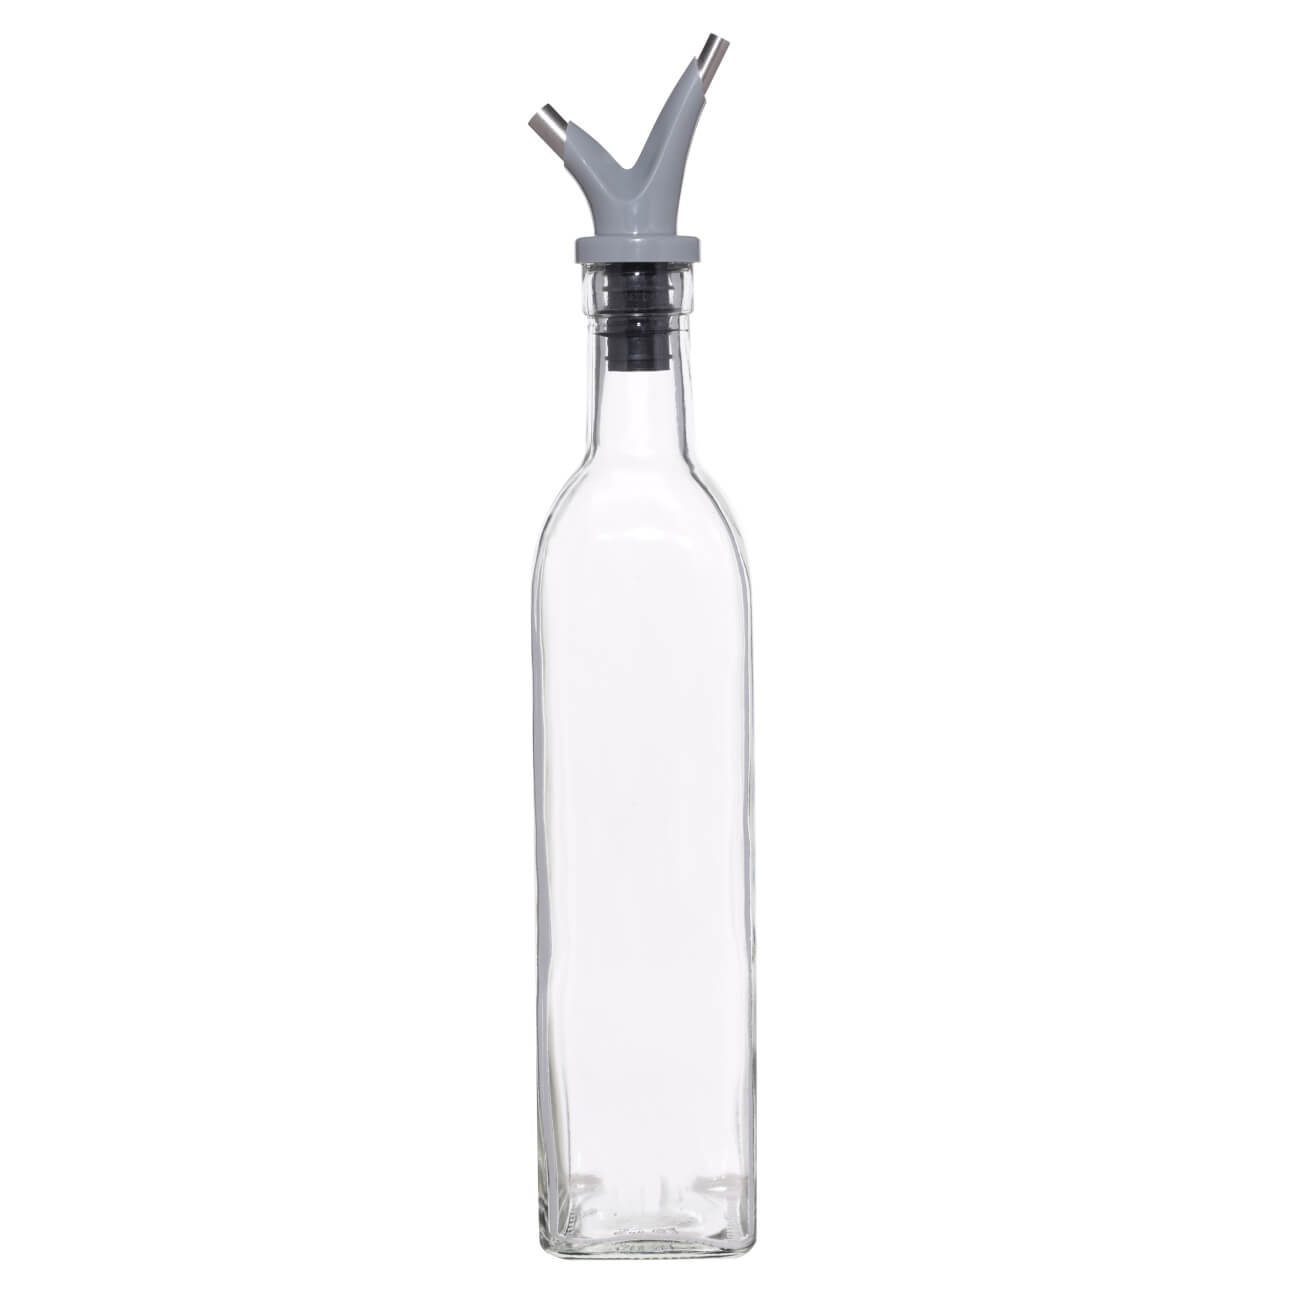 Бутылка для масла или уксуса, 500 мл, с двойным дозатором, стекло/пластик, Assist рукавицы брезент с двойным наладонником оп2